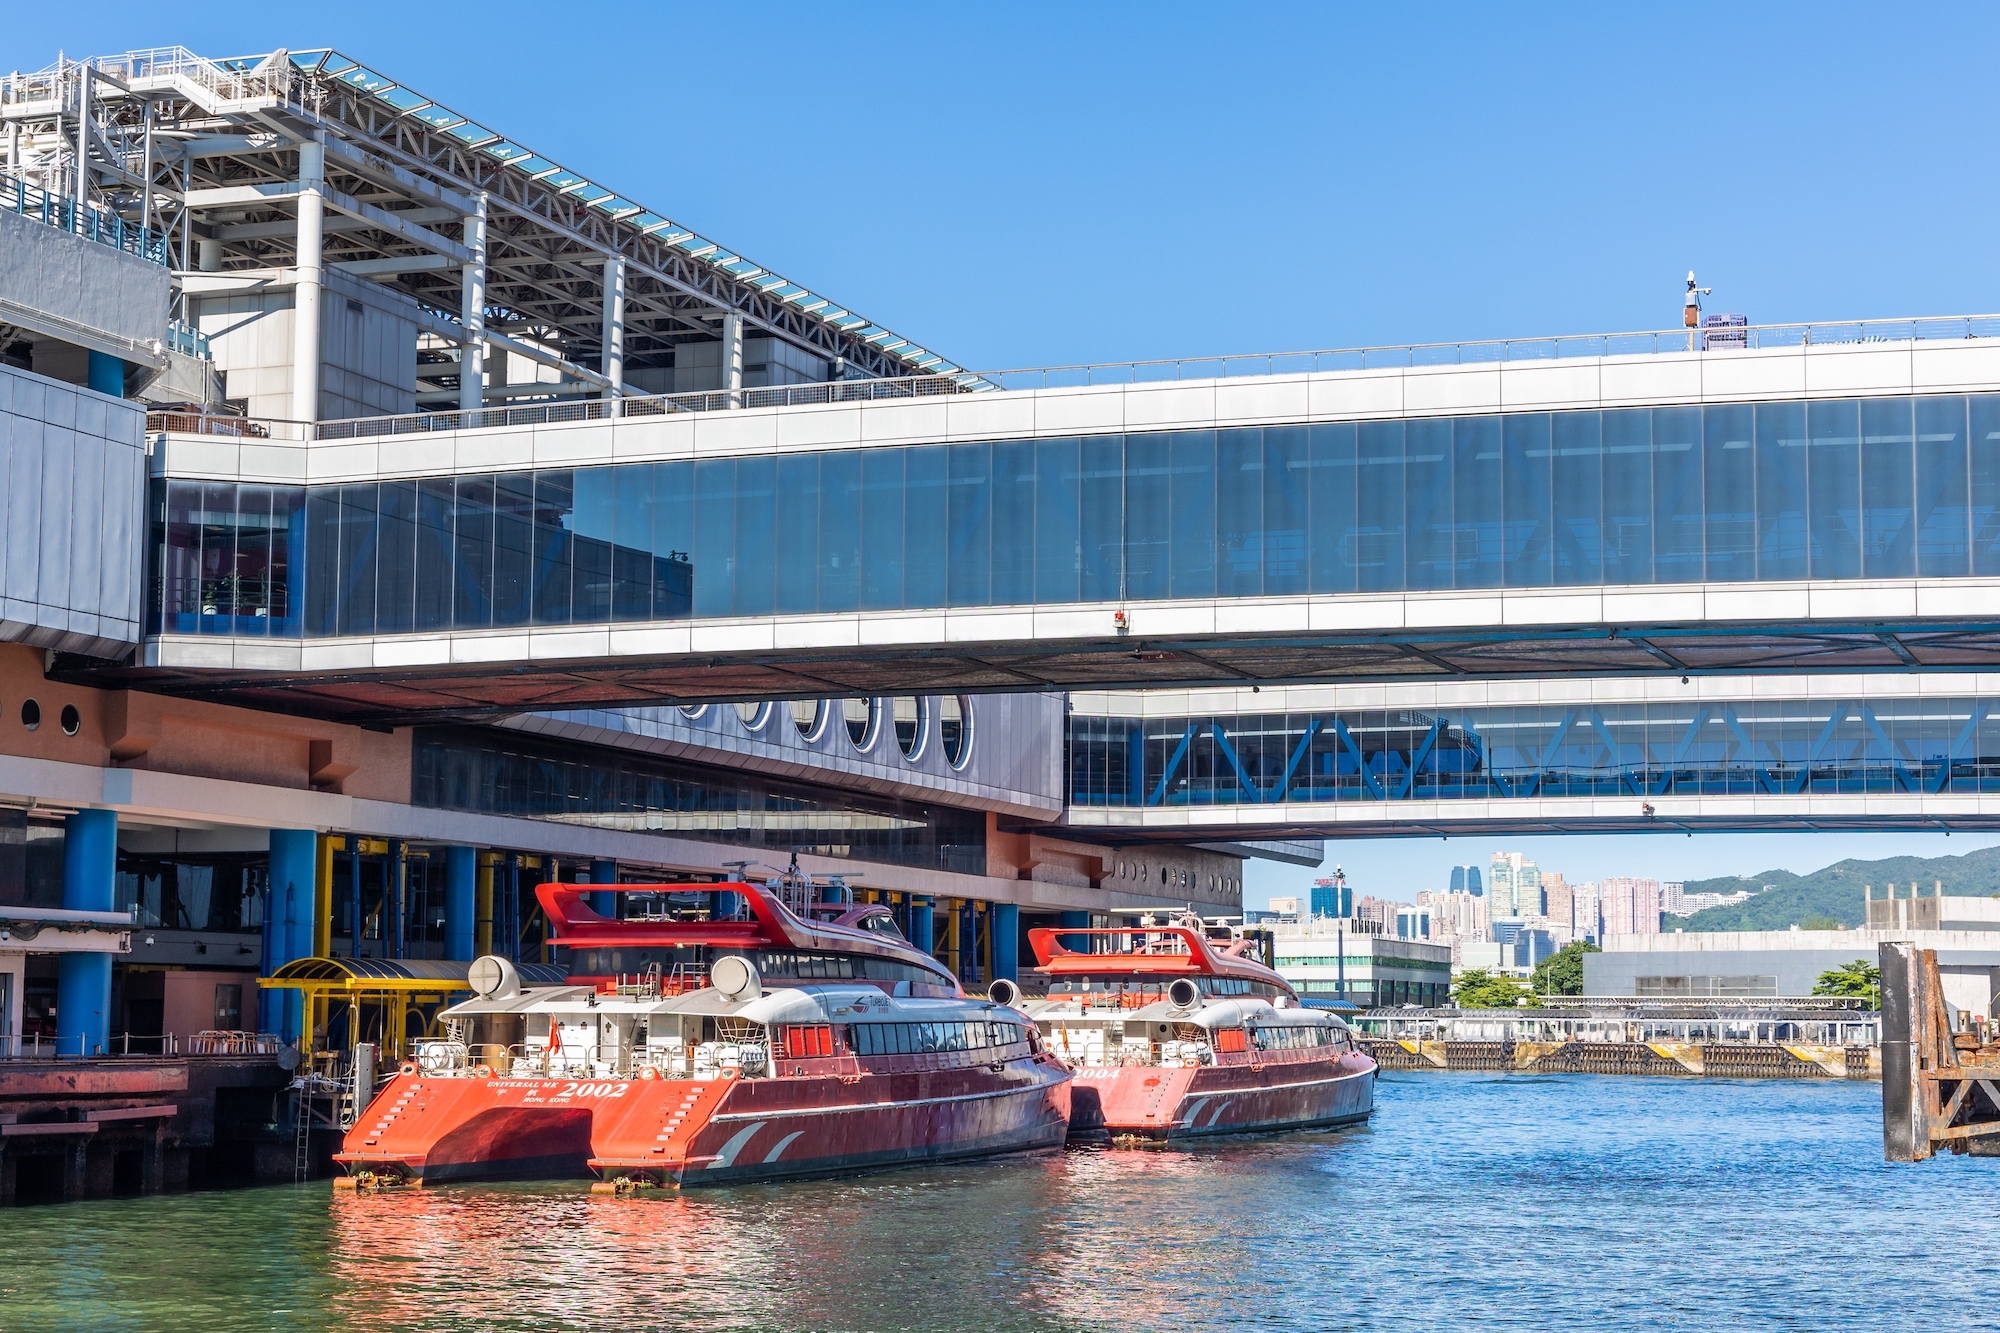 Macao Ferry Terminal-Sheung Wan ferries start